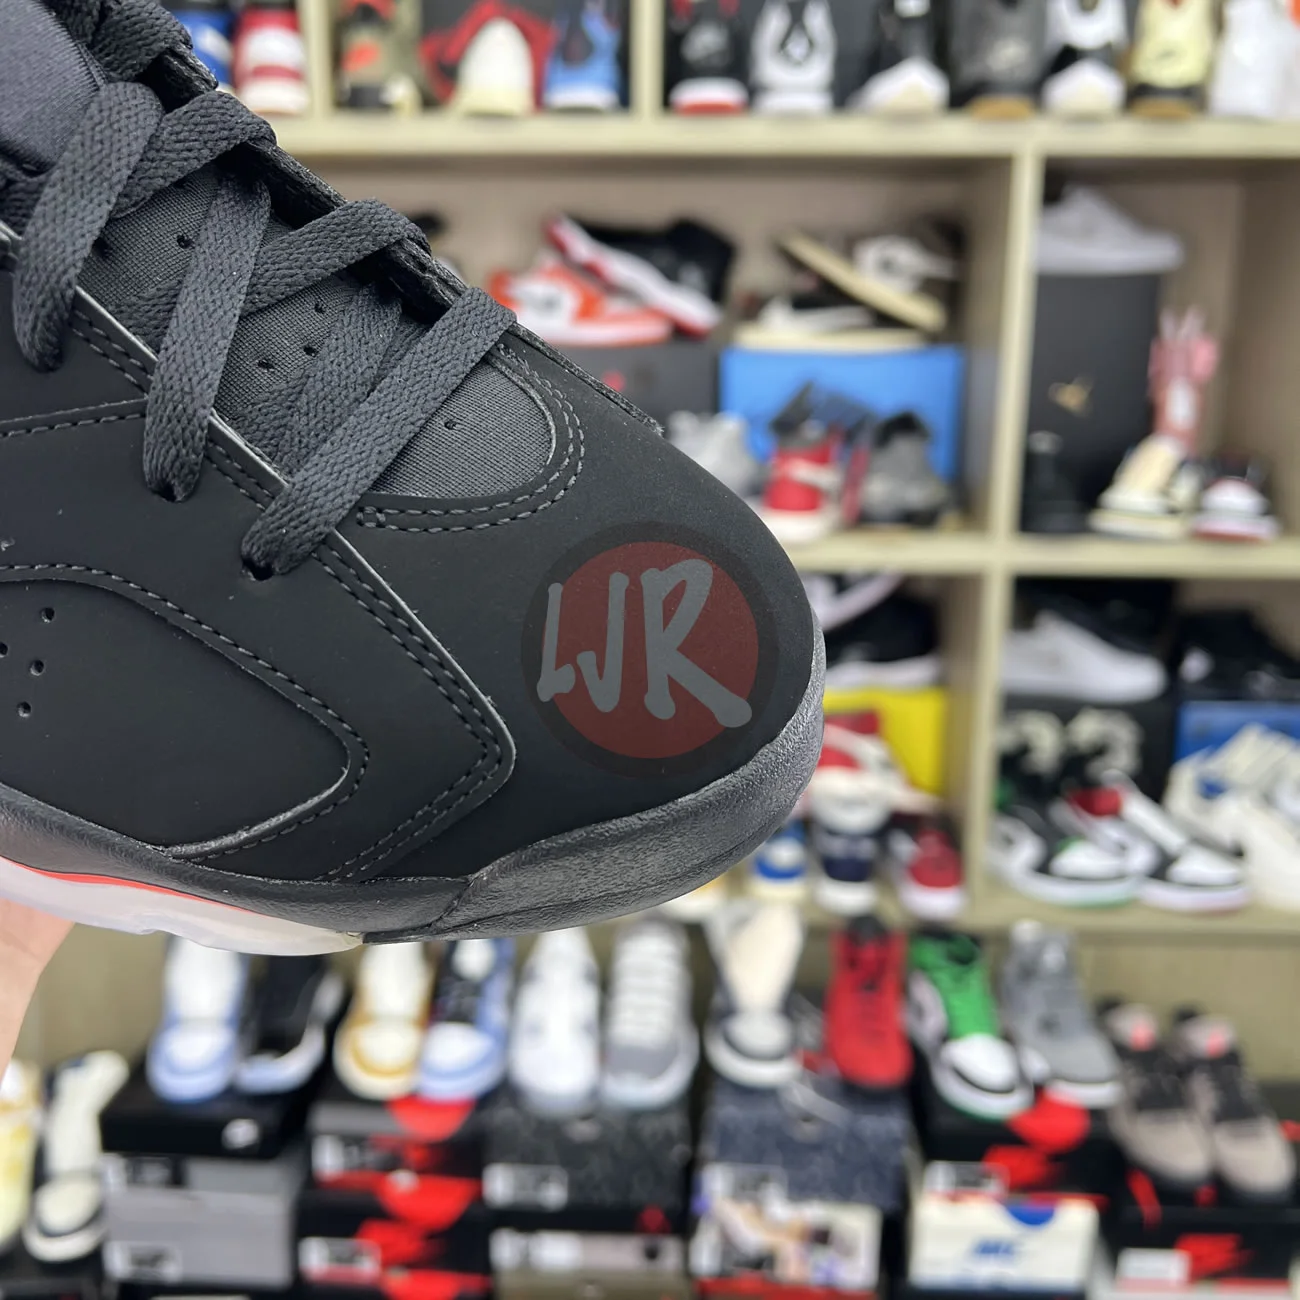 Air Jordan 6 Retro Black Infrared 2019 384664 060 Ljr Sneakers (5) - bc-ljr.com